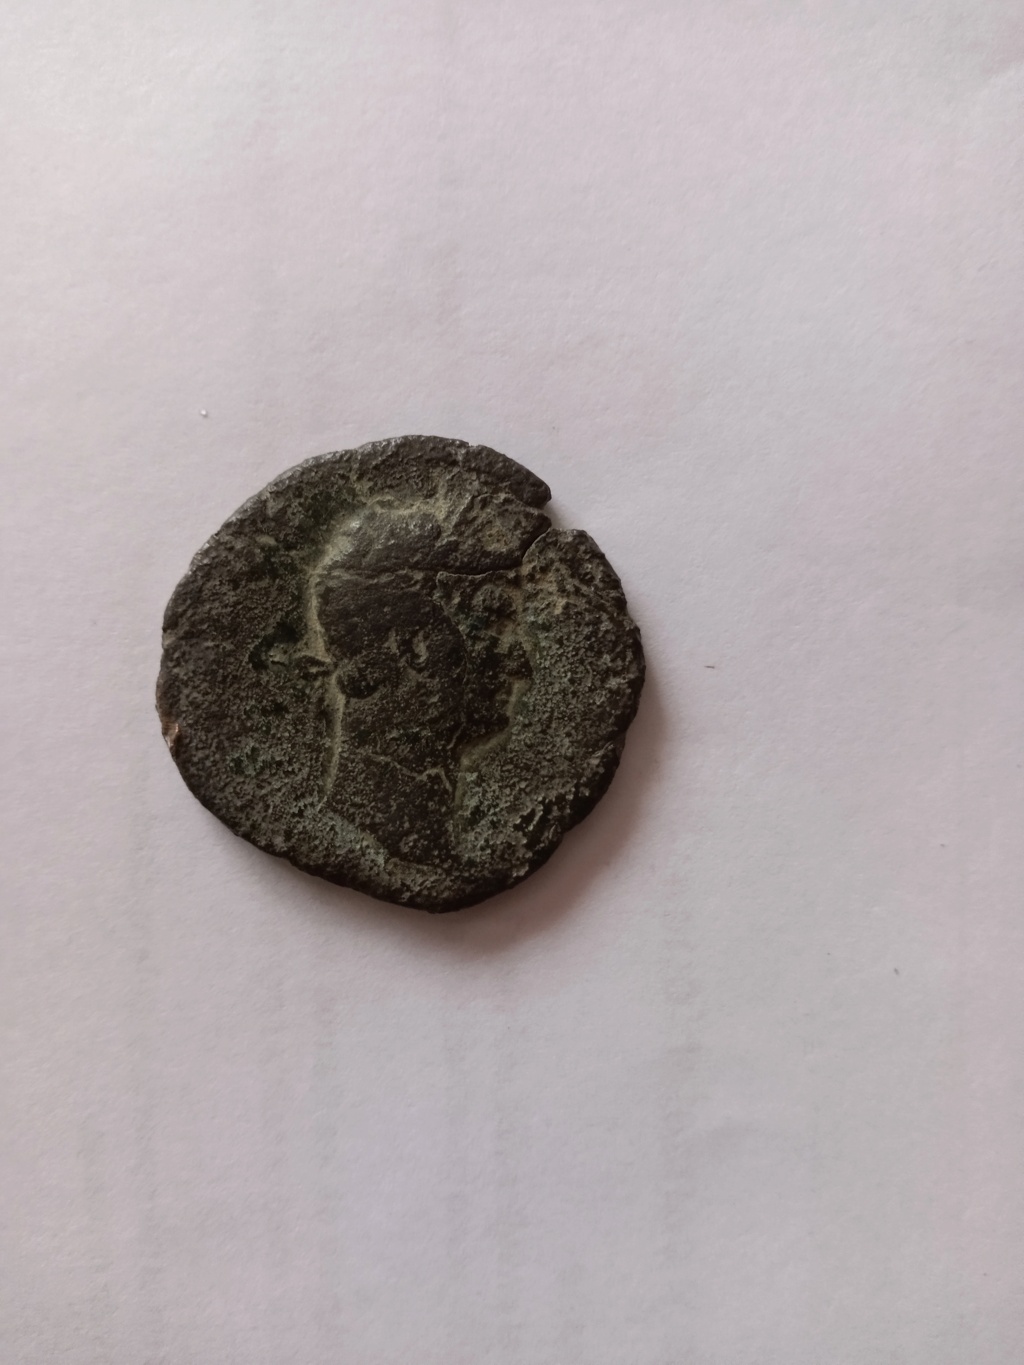 Nuevo en el coleccionismo de monedas romanas 17154510